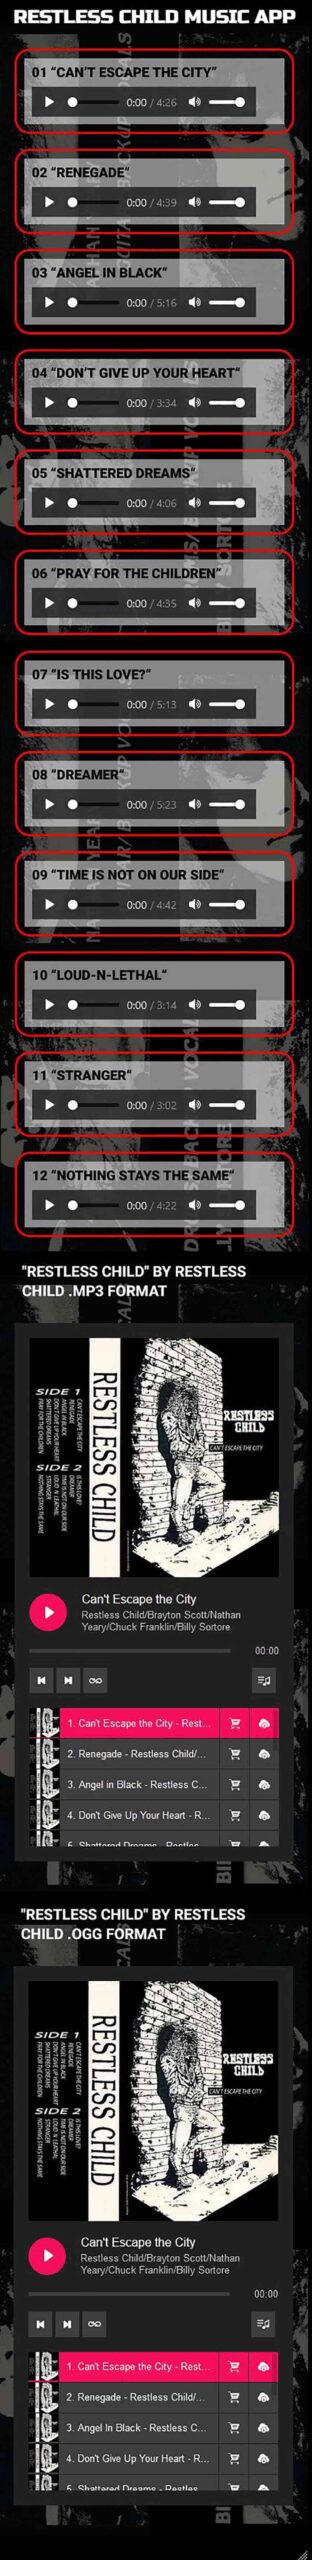 Image of Restless Child Album in App Site 1989 Album, 12 songs $2.99